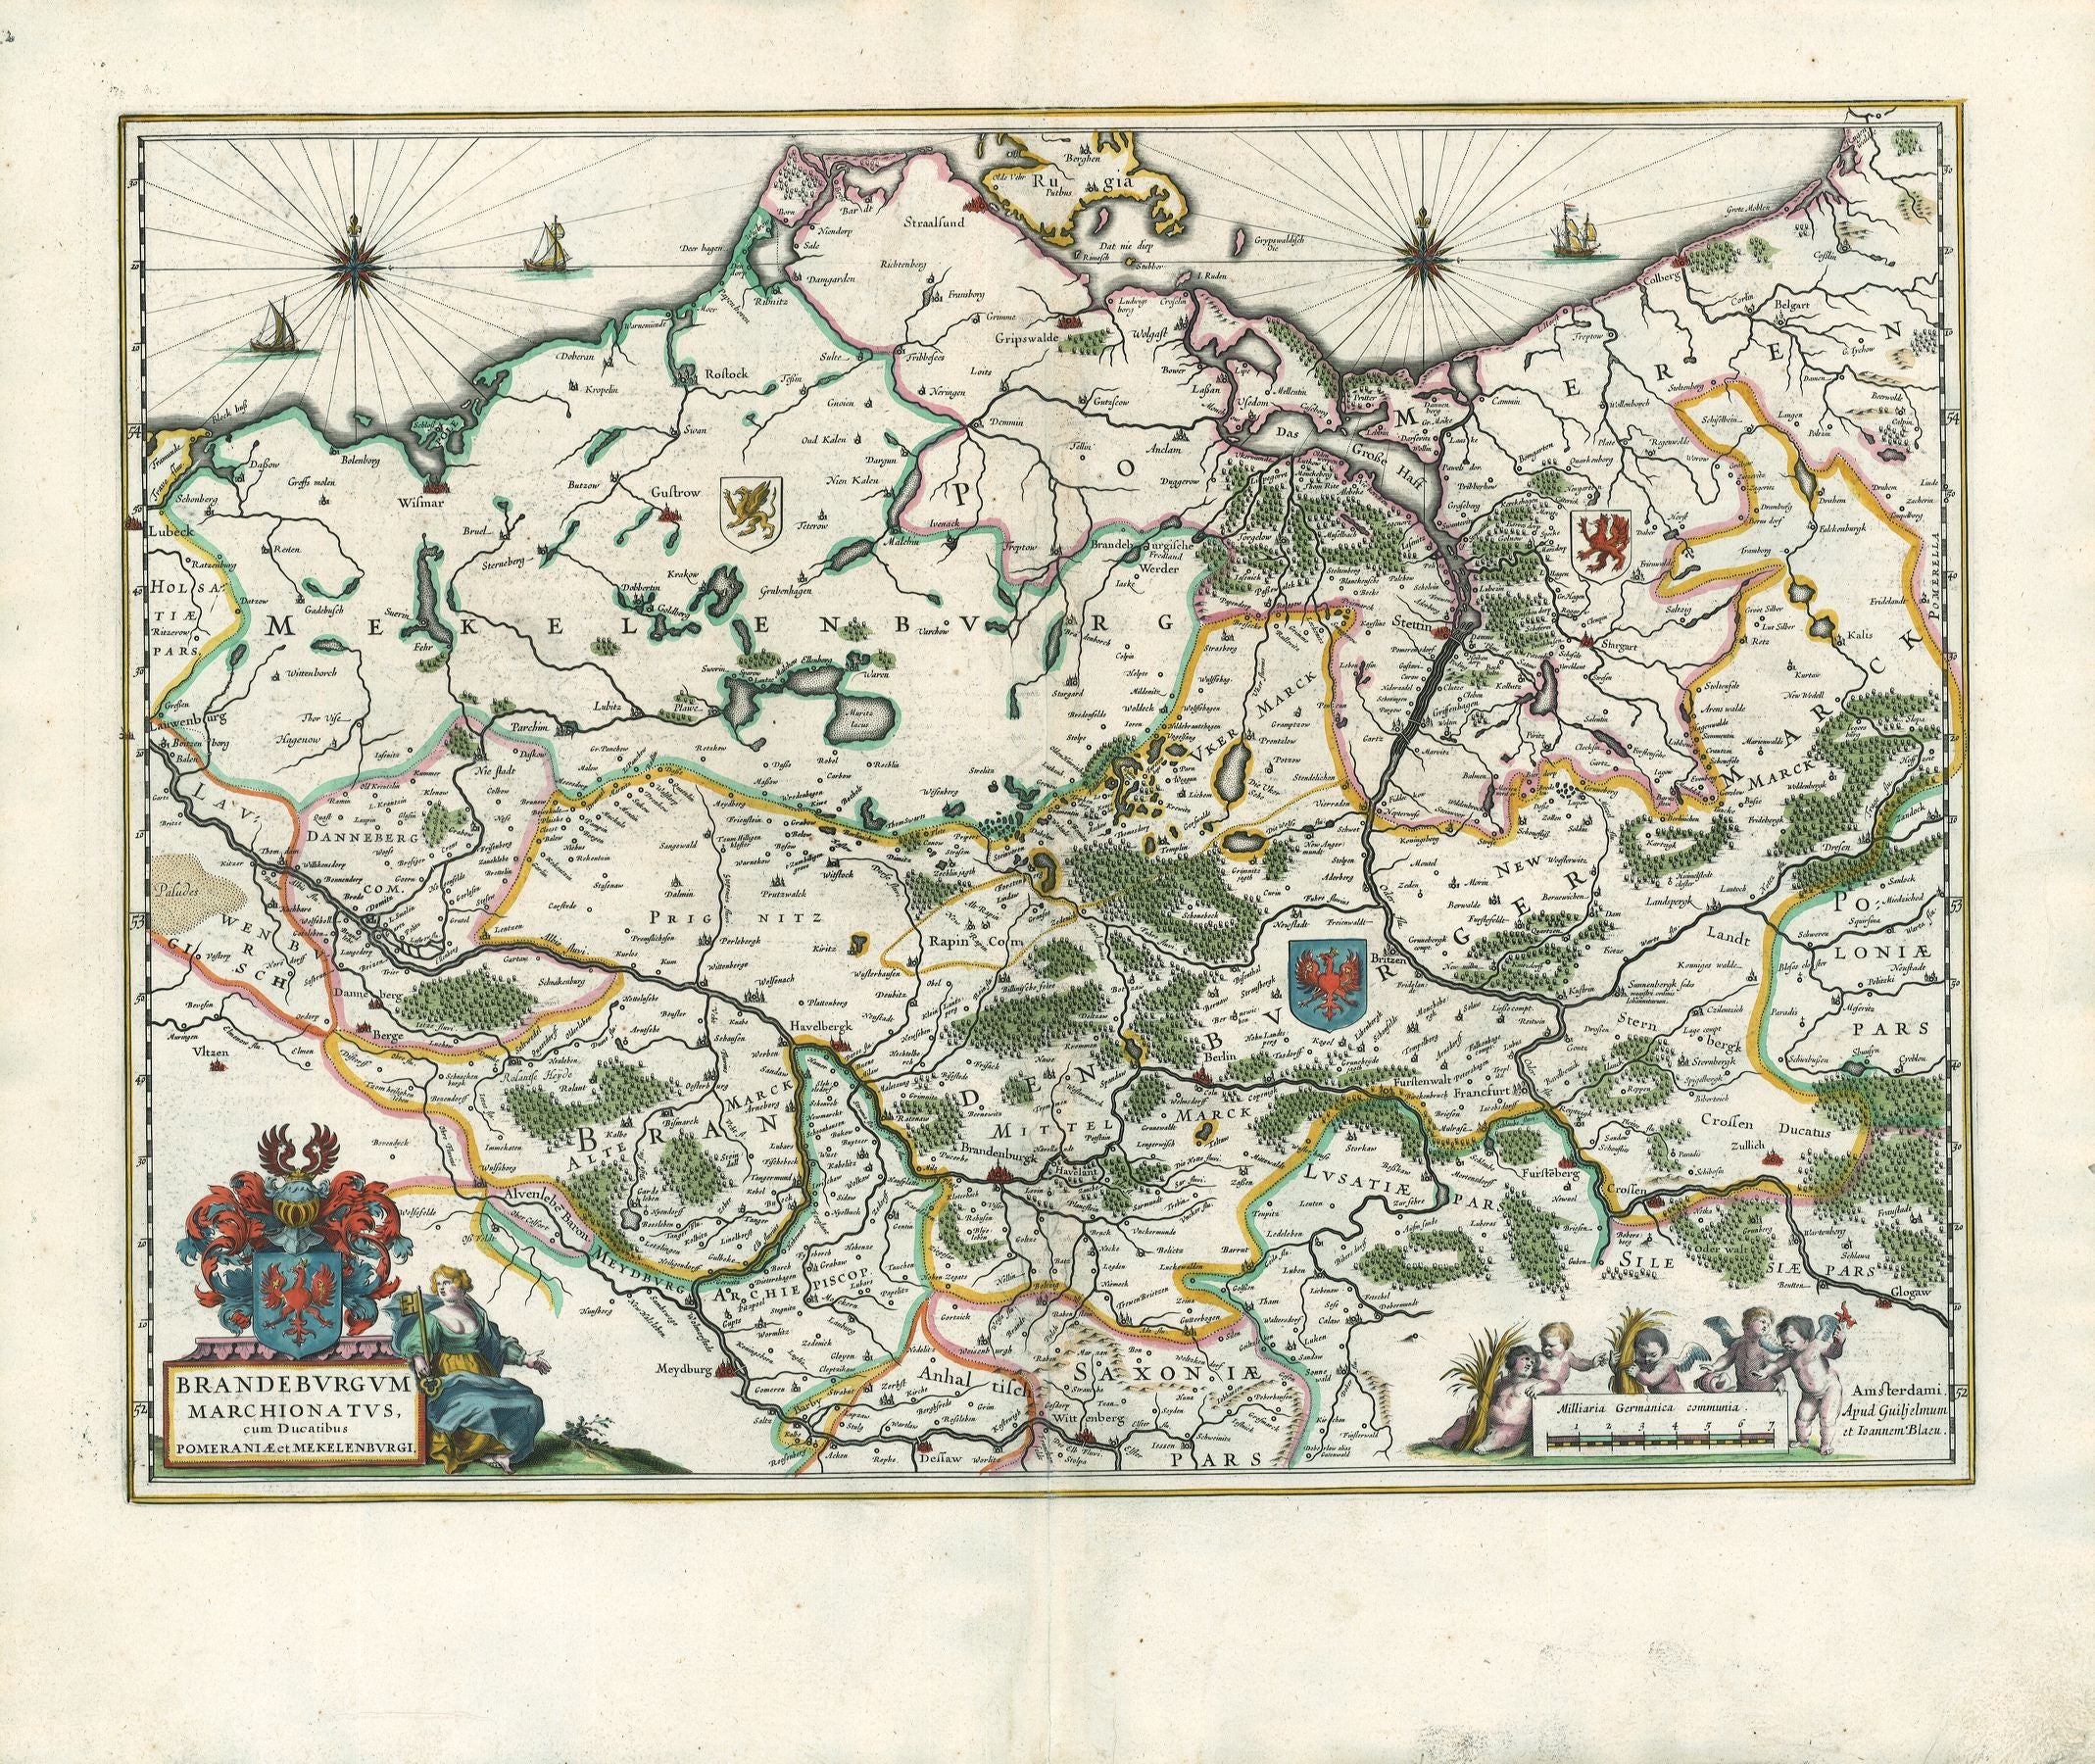 R2559  Blaeu, W.u.J.: Brandeburgum Marchionatus cum Ducatibus Pomeraniae et Mekelenburgi. 1631